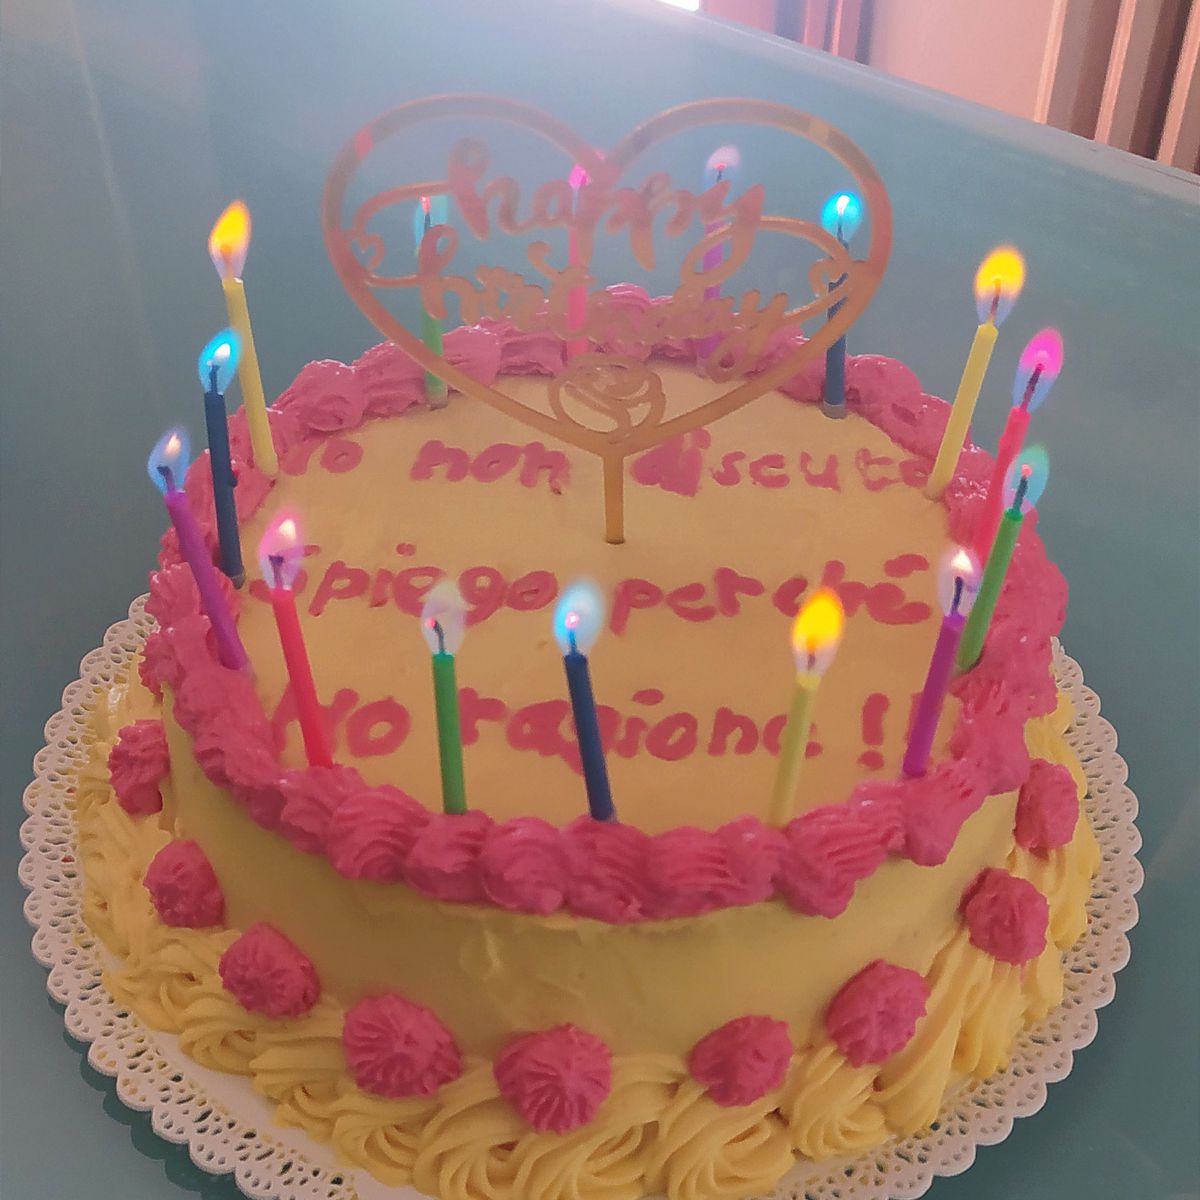 Ricetta Ugly cake di compleanno di LaGianna